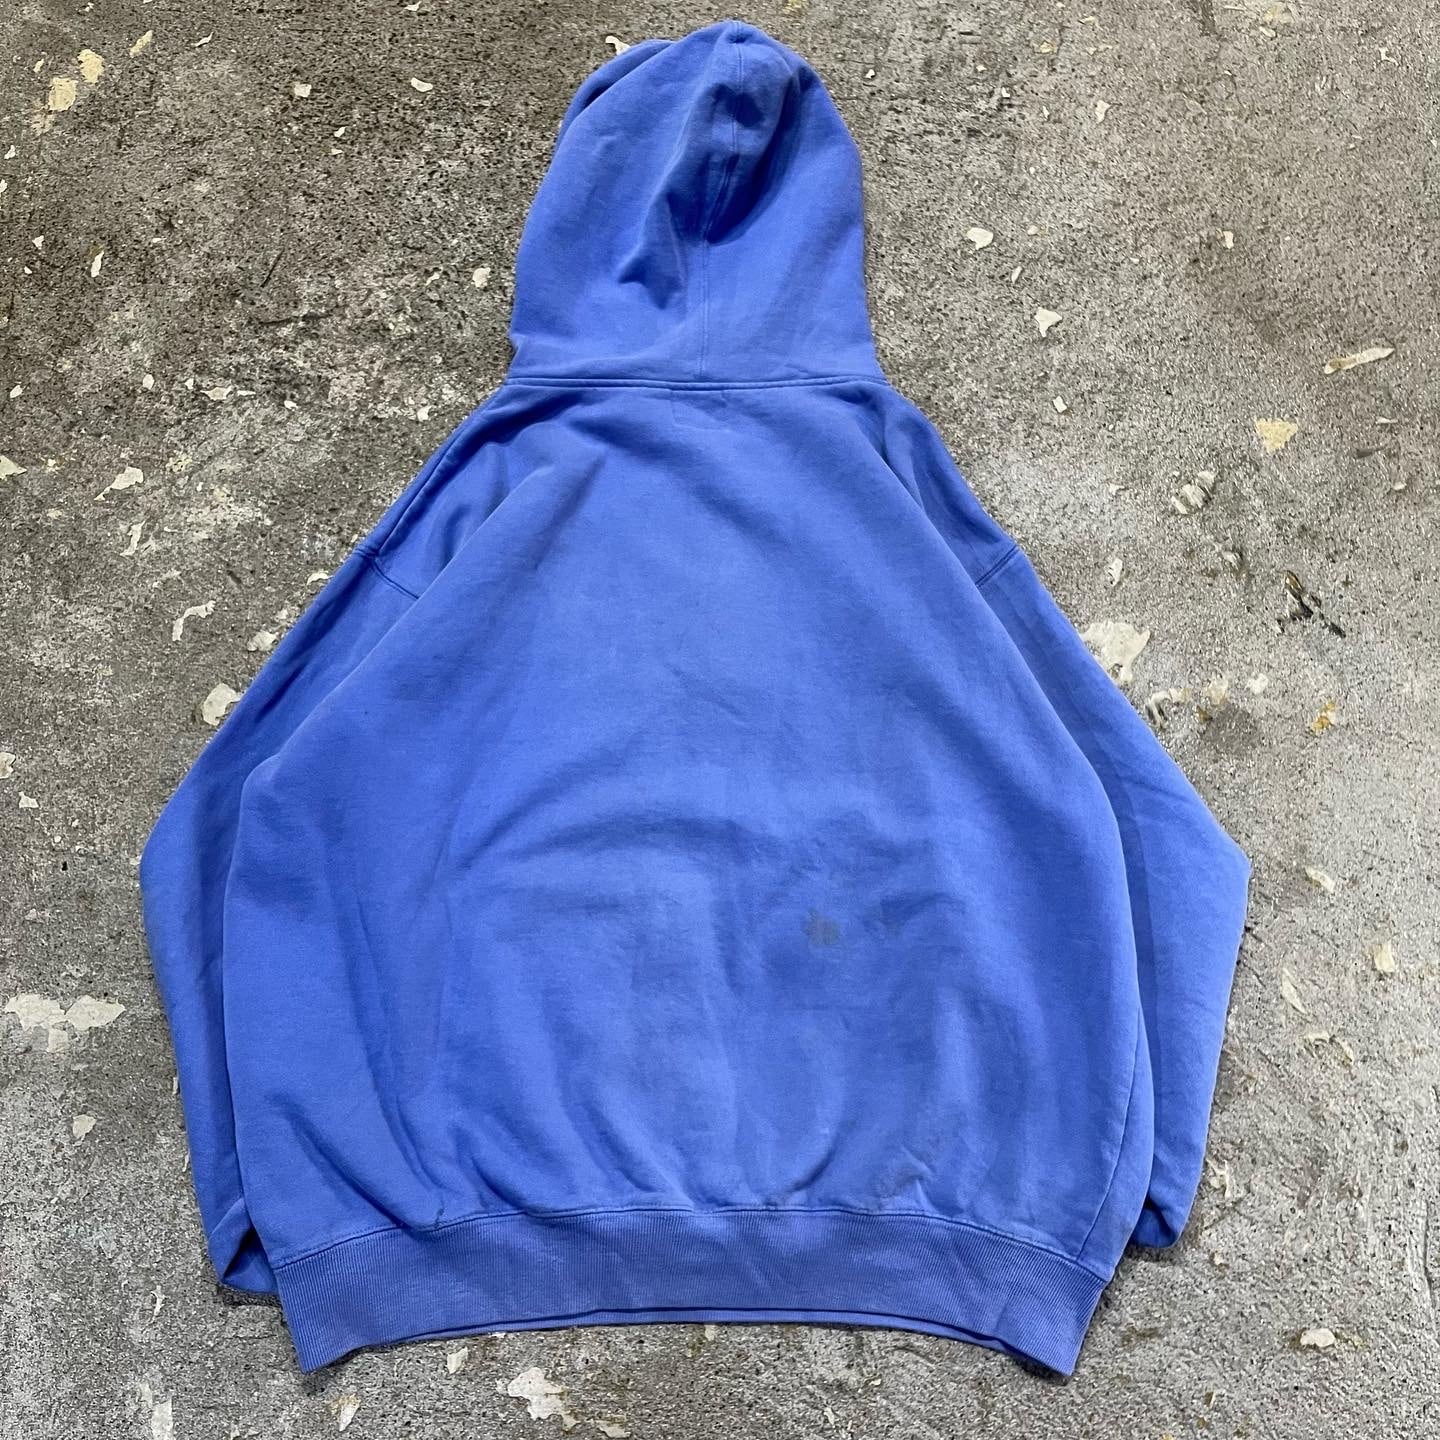 〔Vintage〕Old gap half zip sweat hoodie